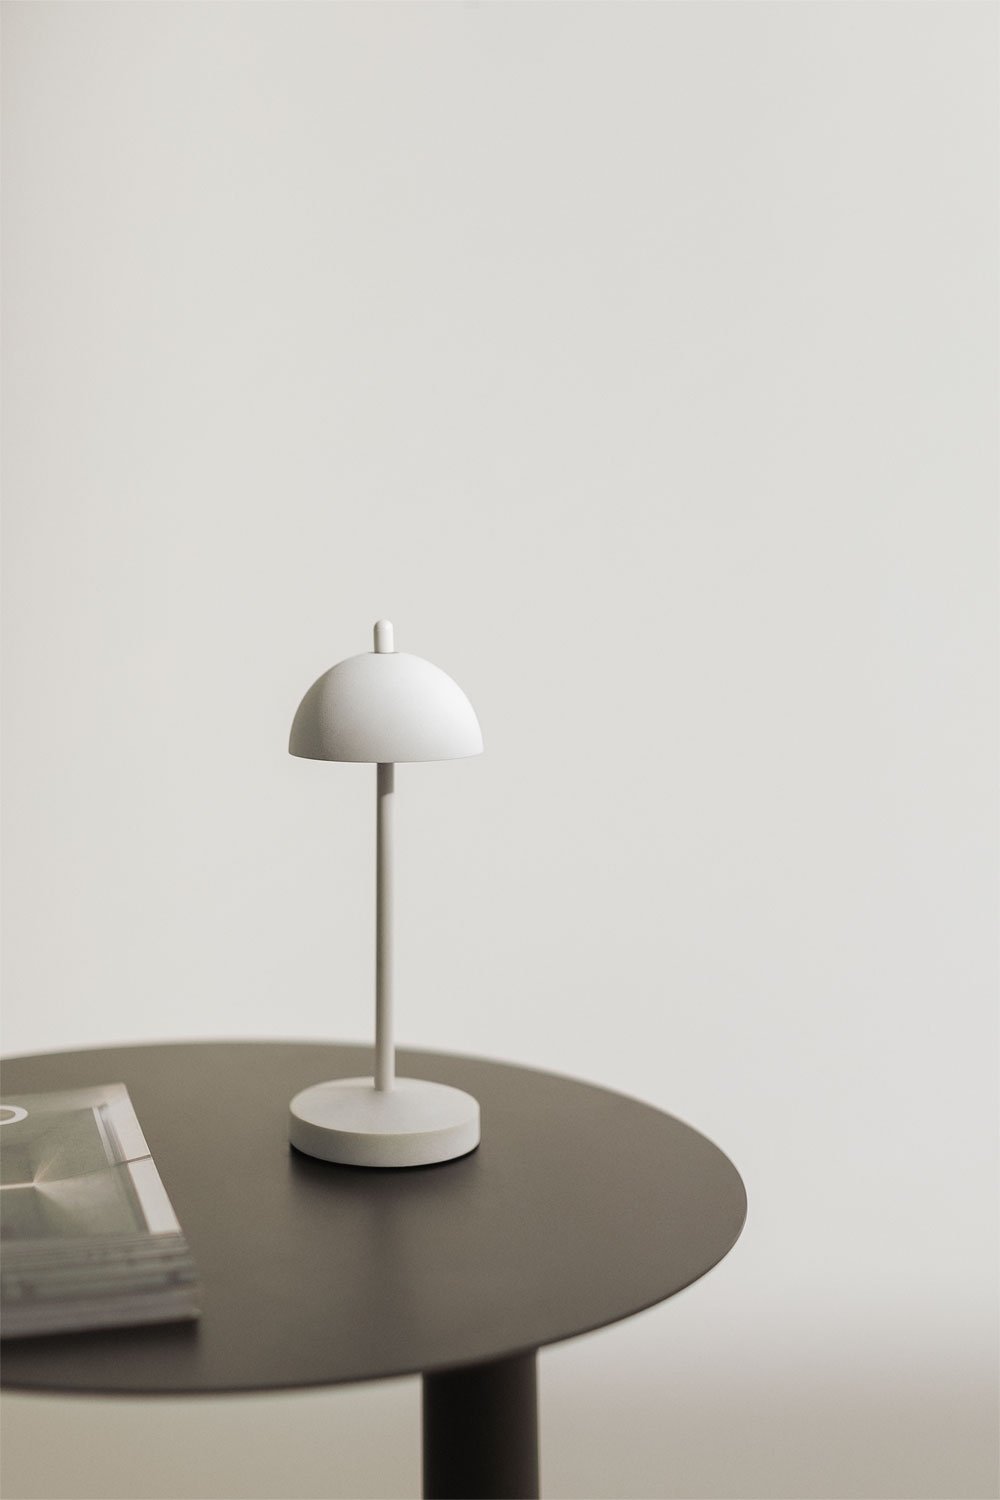 Helenia Draadloze LED Tafellamp , galerij beeld 1